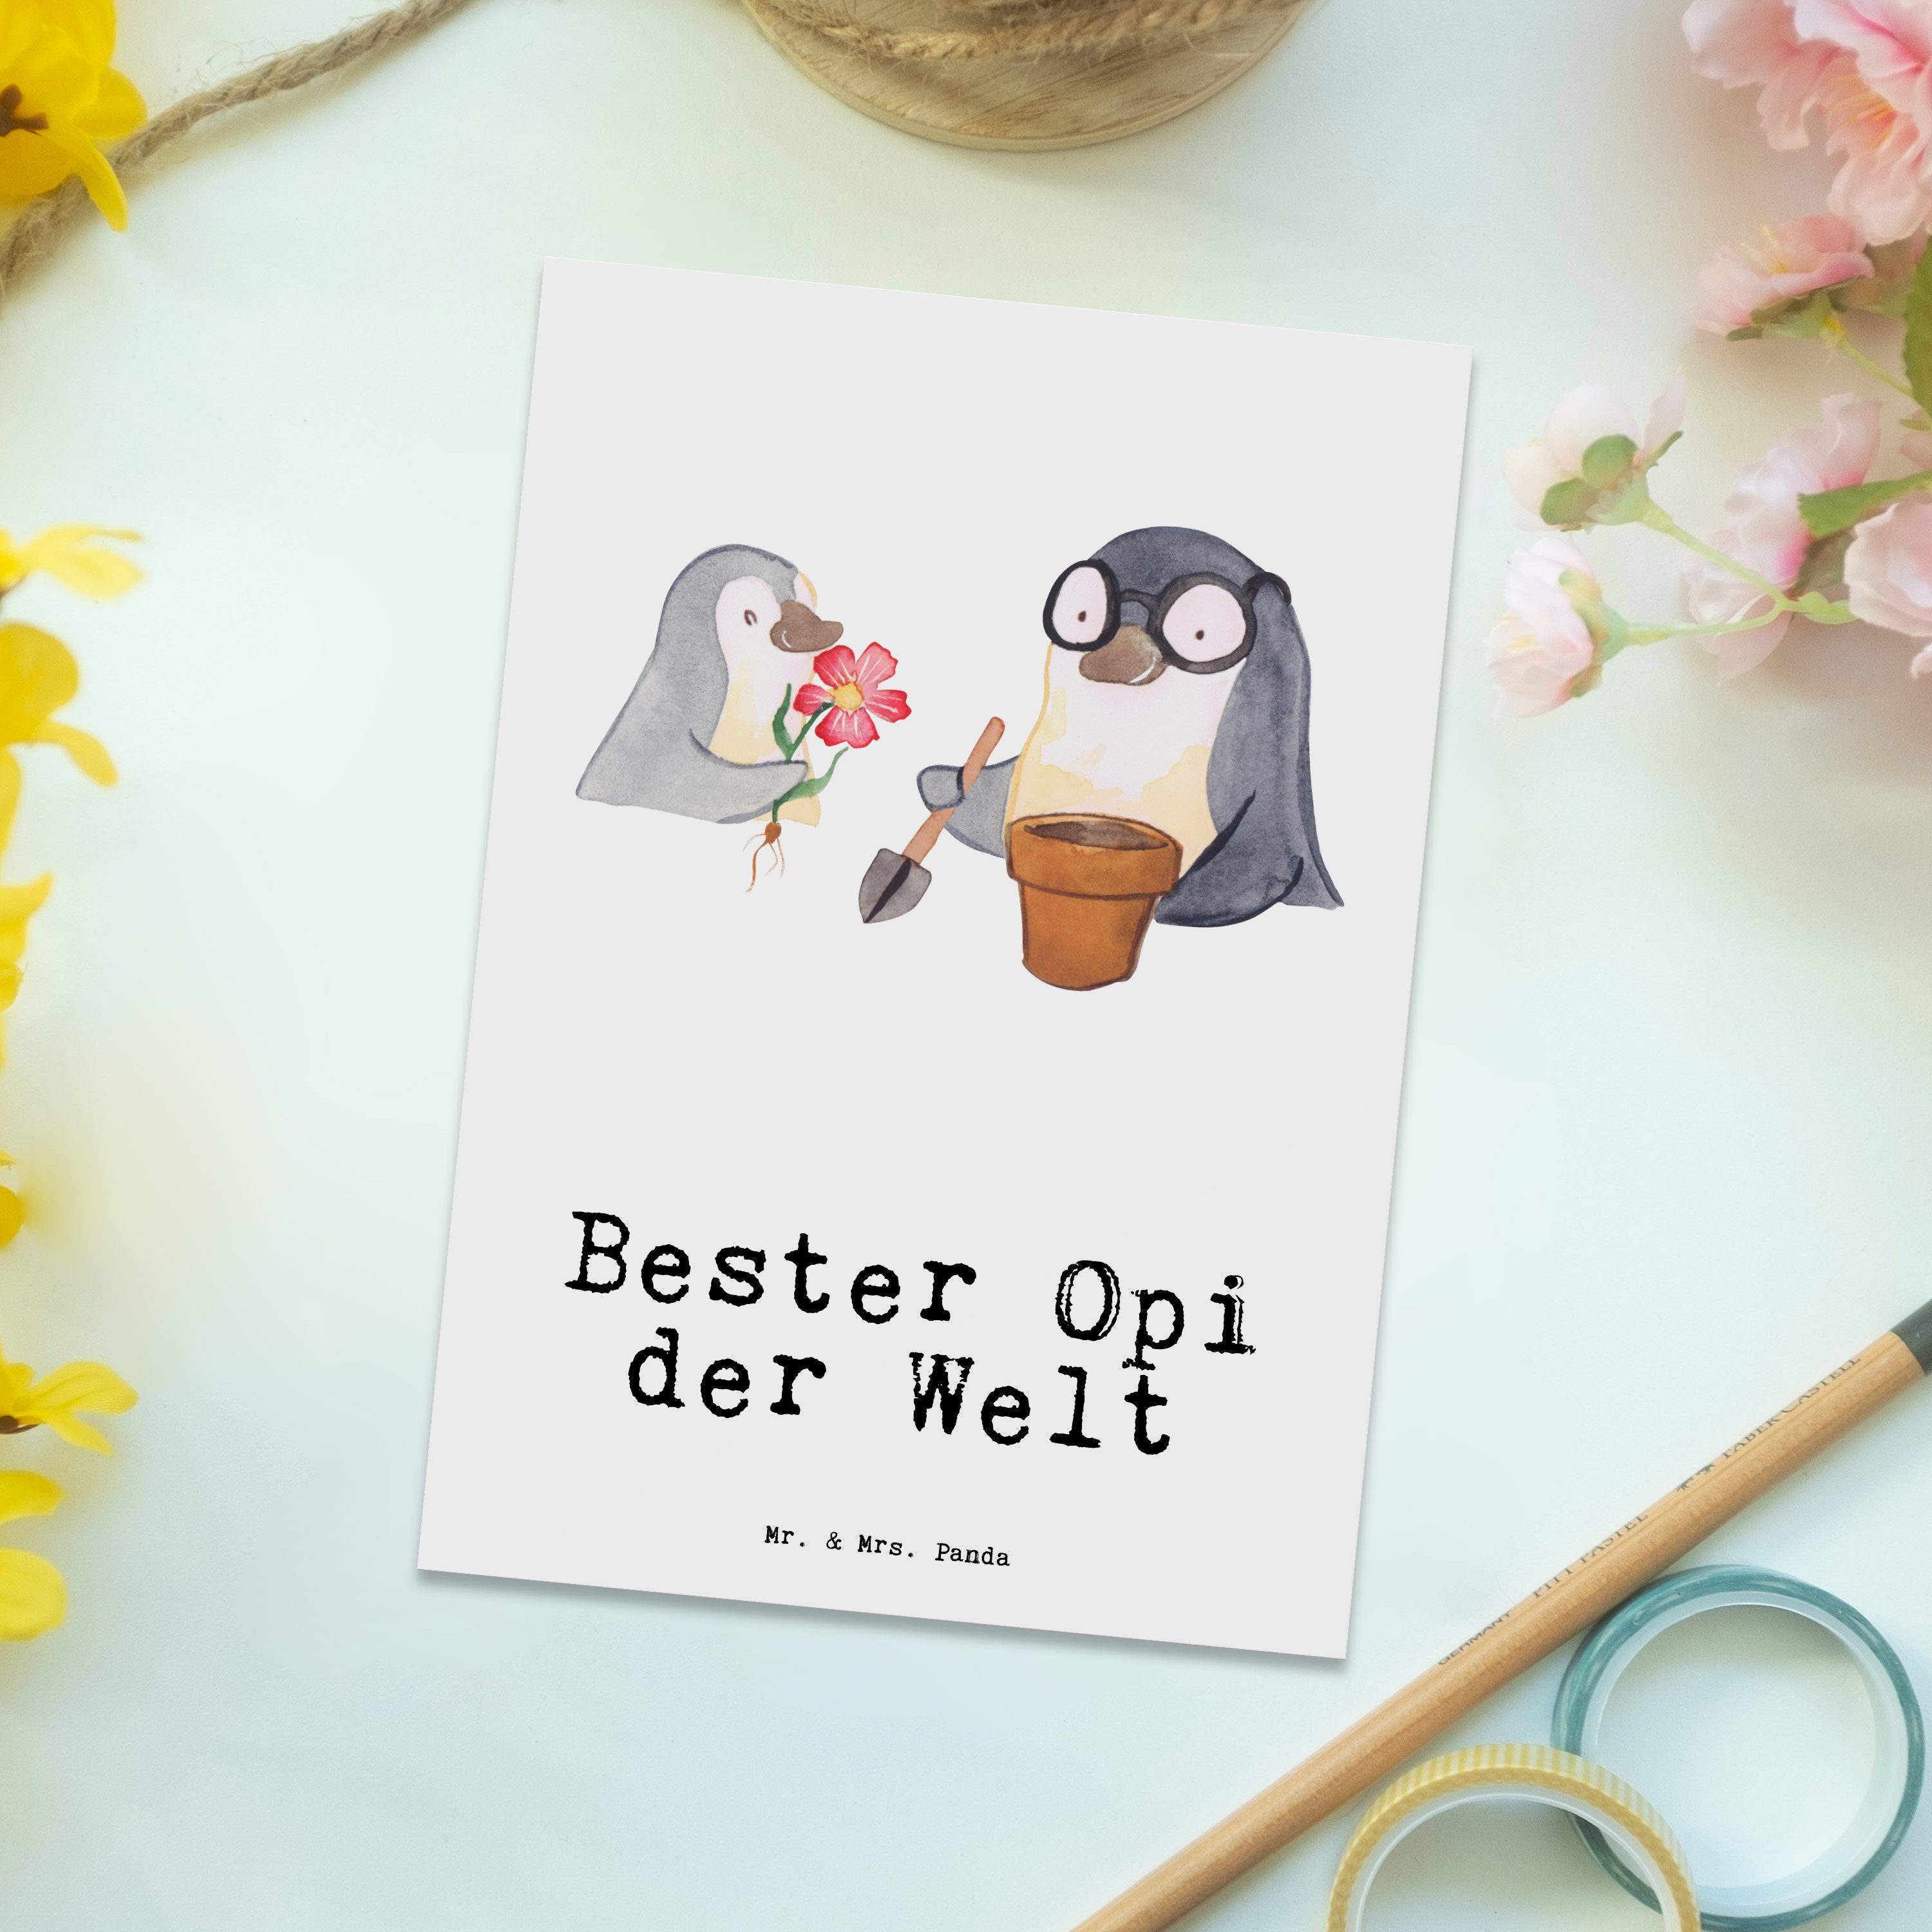 Mr. & Geschenkkarte, Opi Postkarte Bester Grußkarte, - Ansichtskarte, Panda Geschenktipp Welt Karte, für, - Einladung, der Freude Weiß Geschenk, machen, Pinguin Mrs